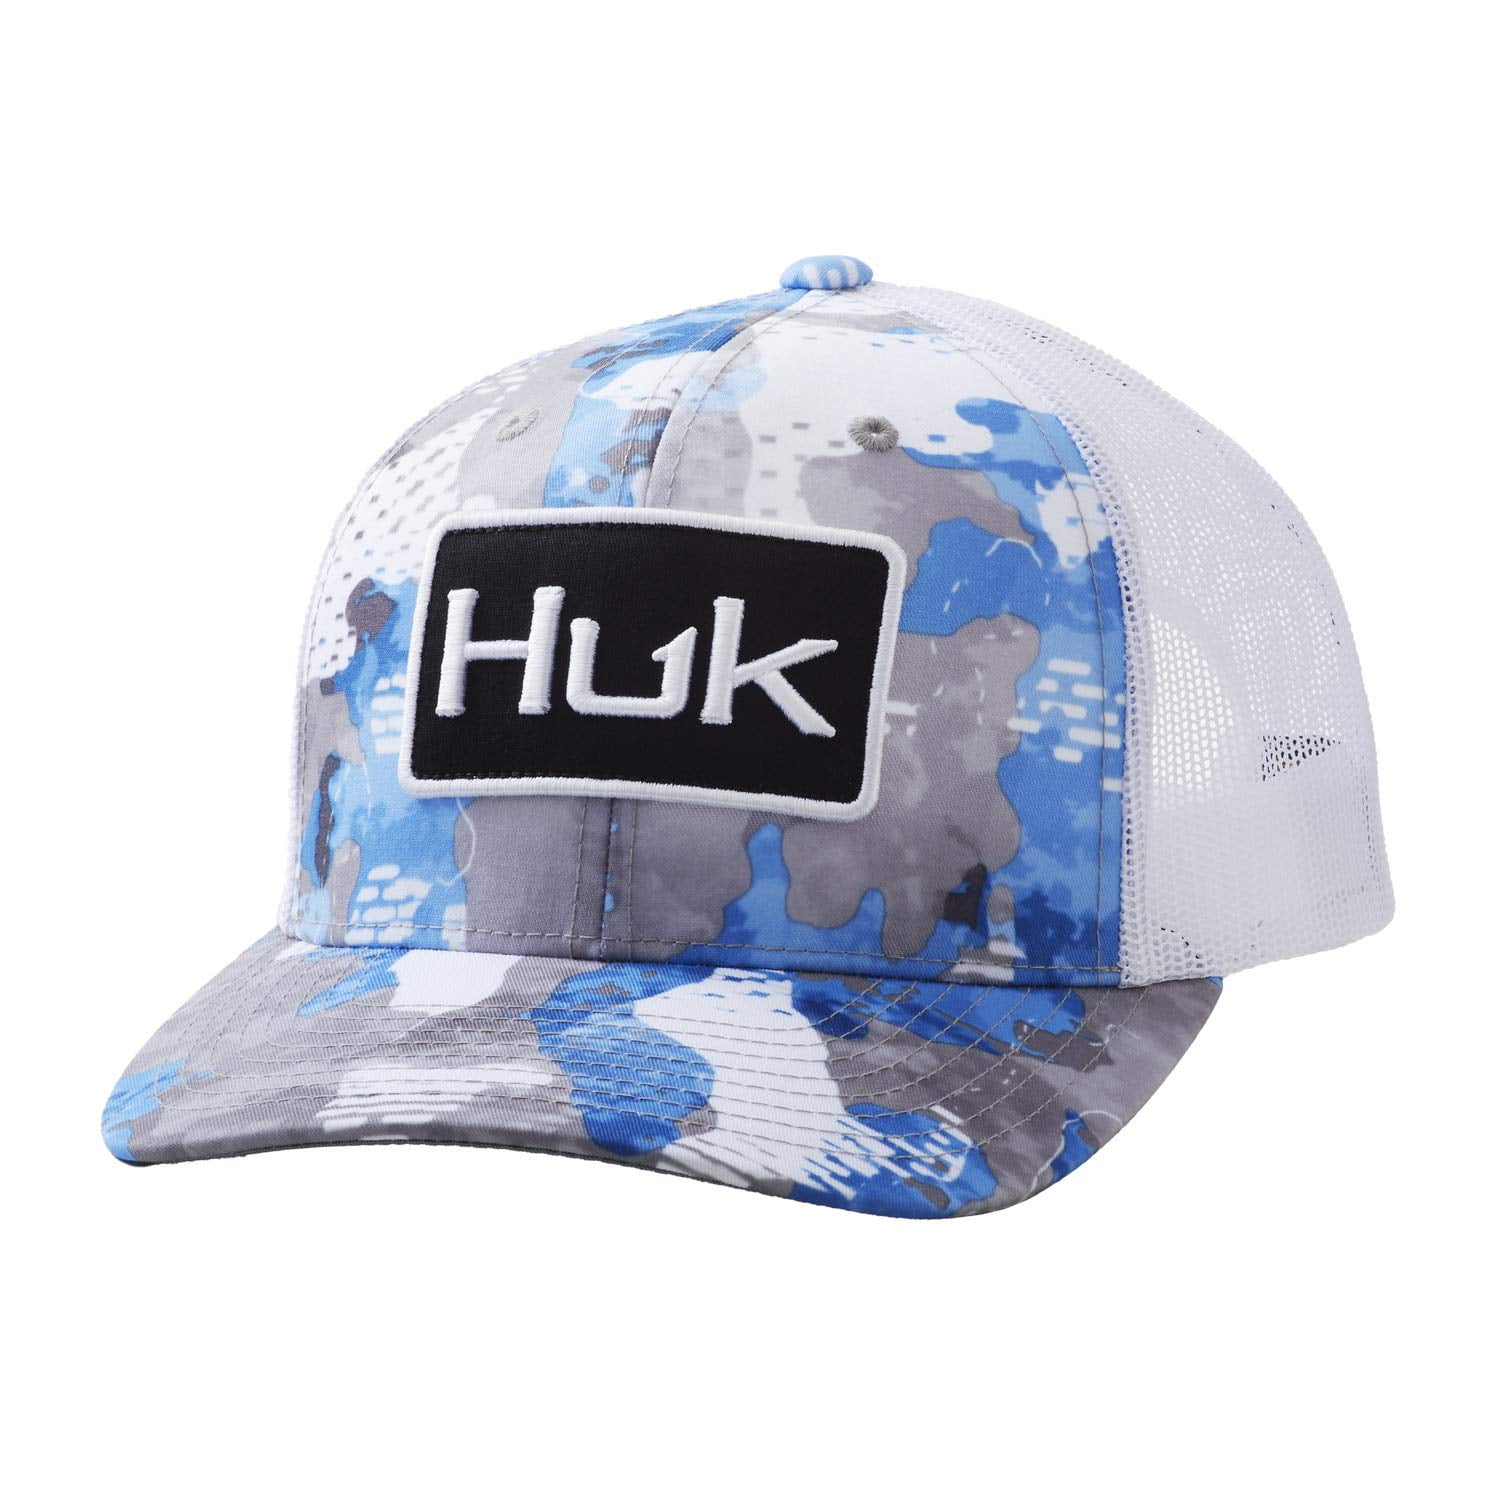 Huk Men's Huk'd Up Performance Stretch Hat (Huk'd Up - Black 